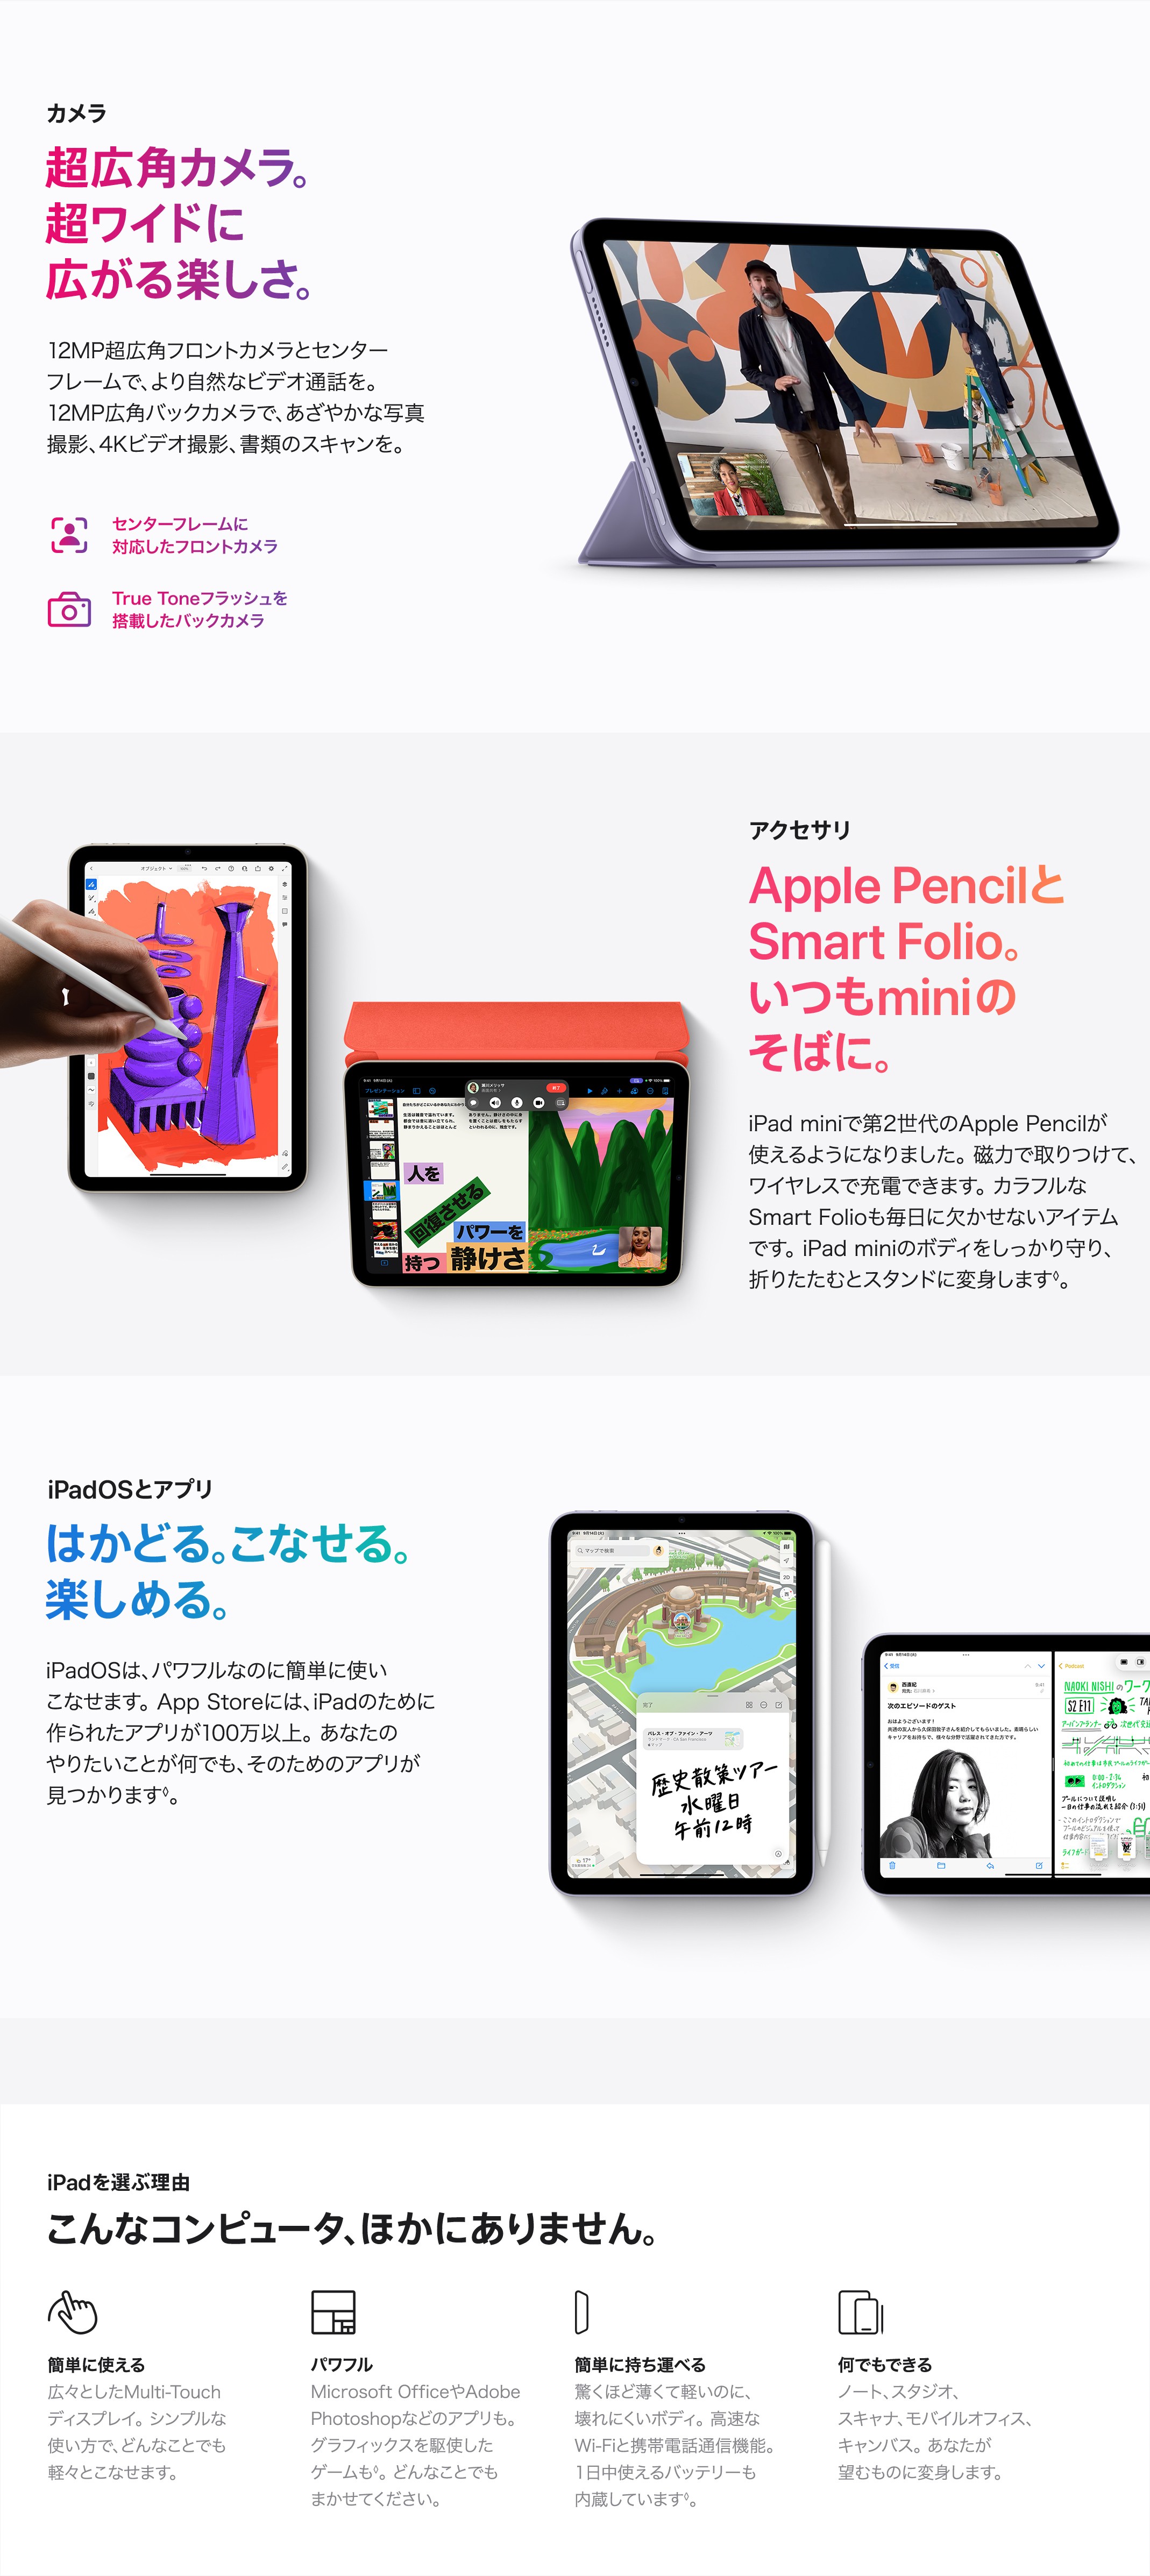 Ipad Mini の製品情報 Au 法人 ビジネス向け Kddi株式会社